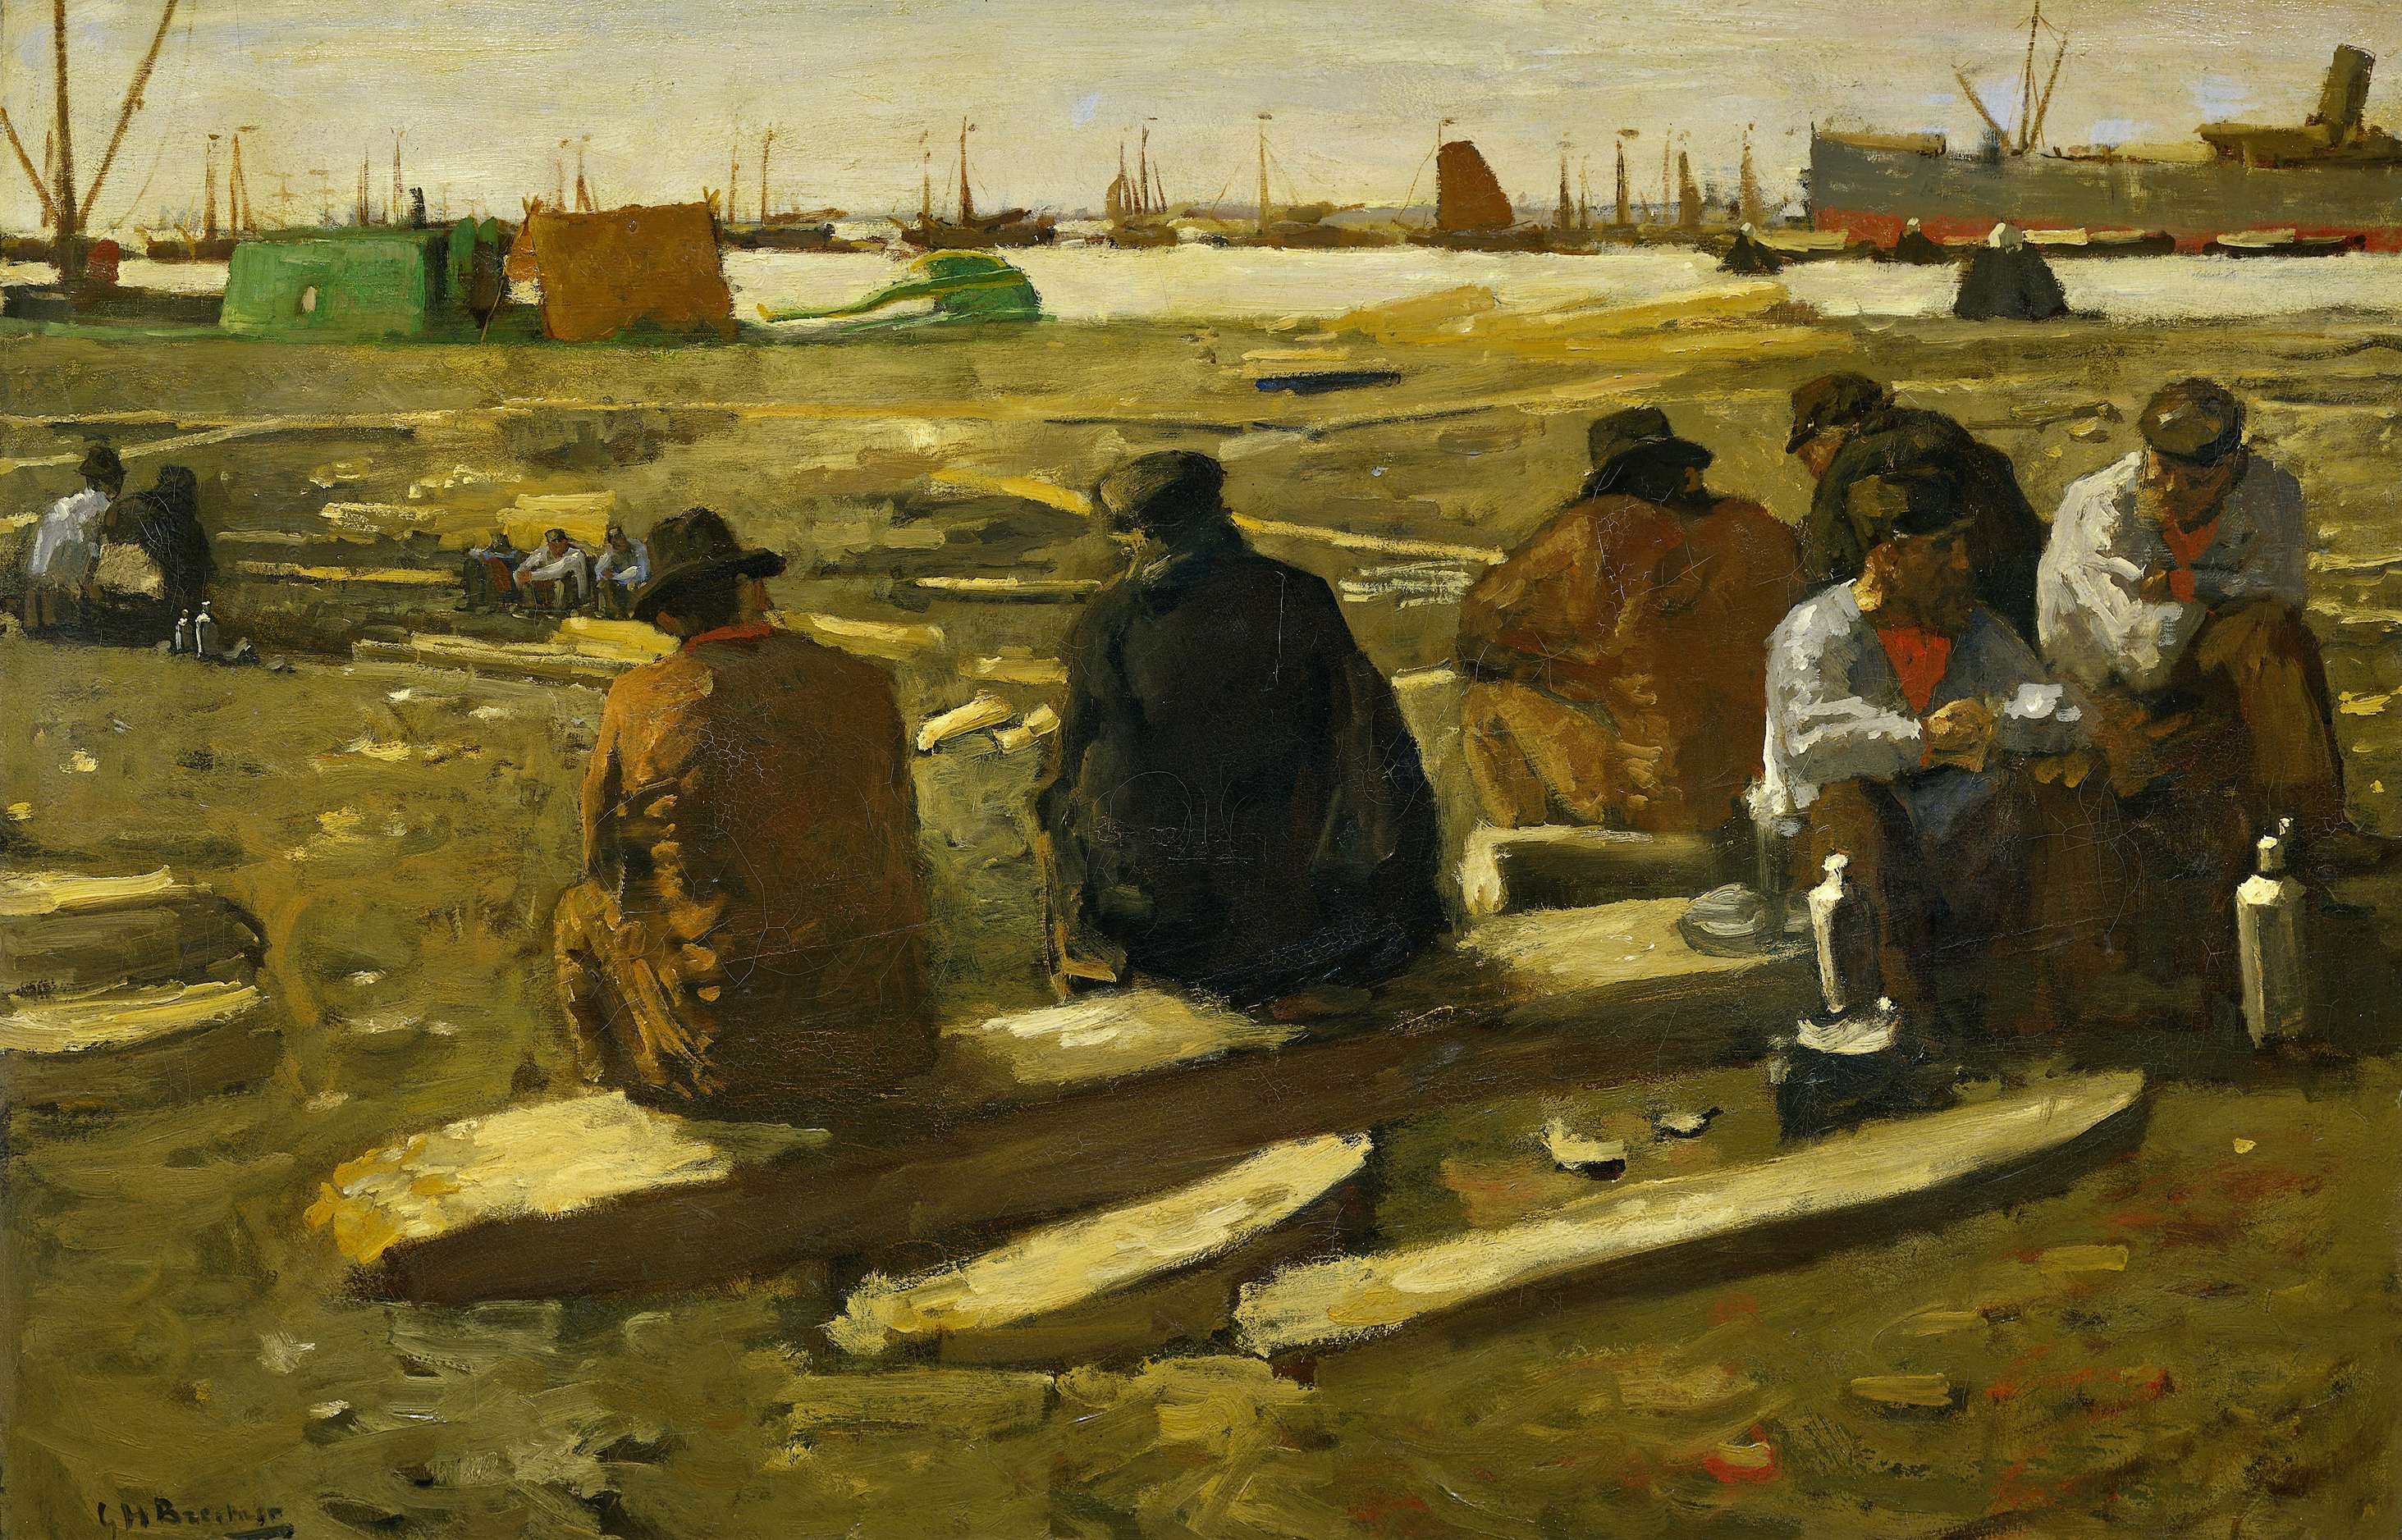 阿姆斯特丹的范·迪门斯特拉特一处工地上的午餐 by George Hendrik Breitner - 1897 - 78 x 115 cm 